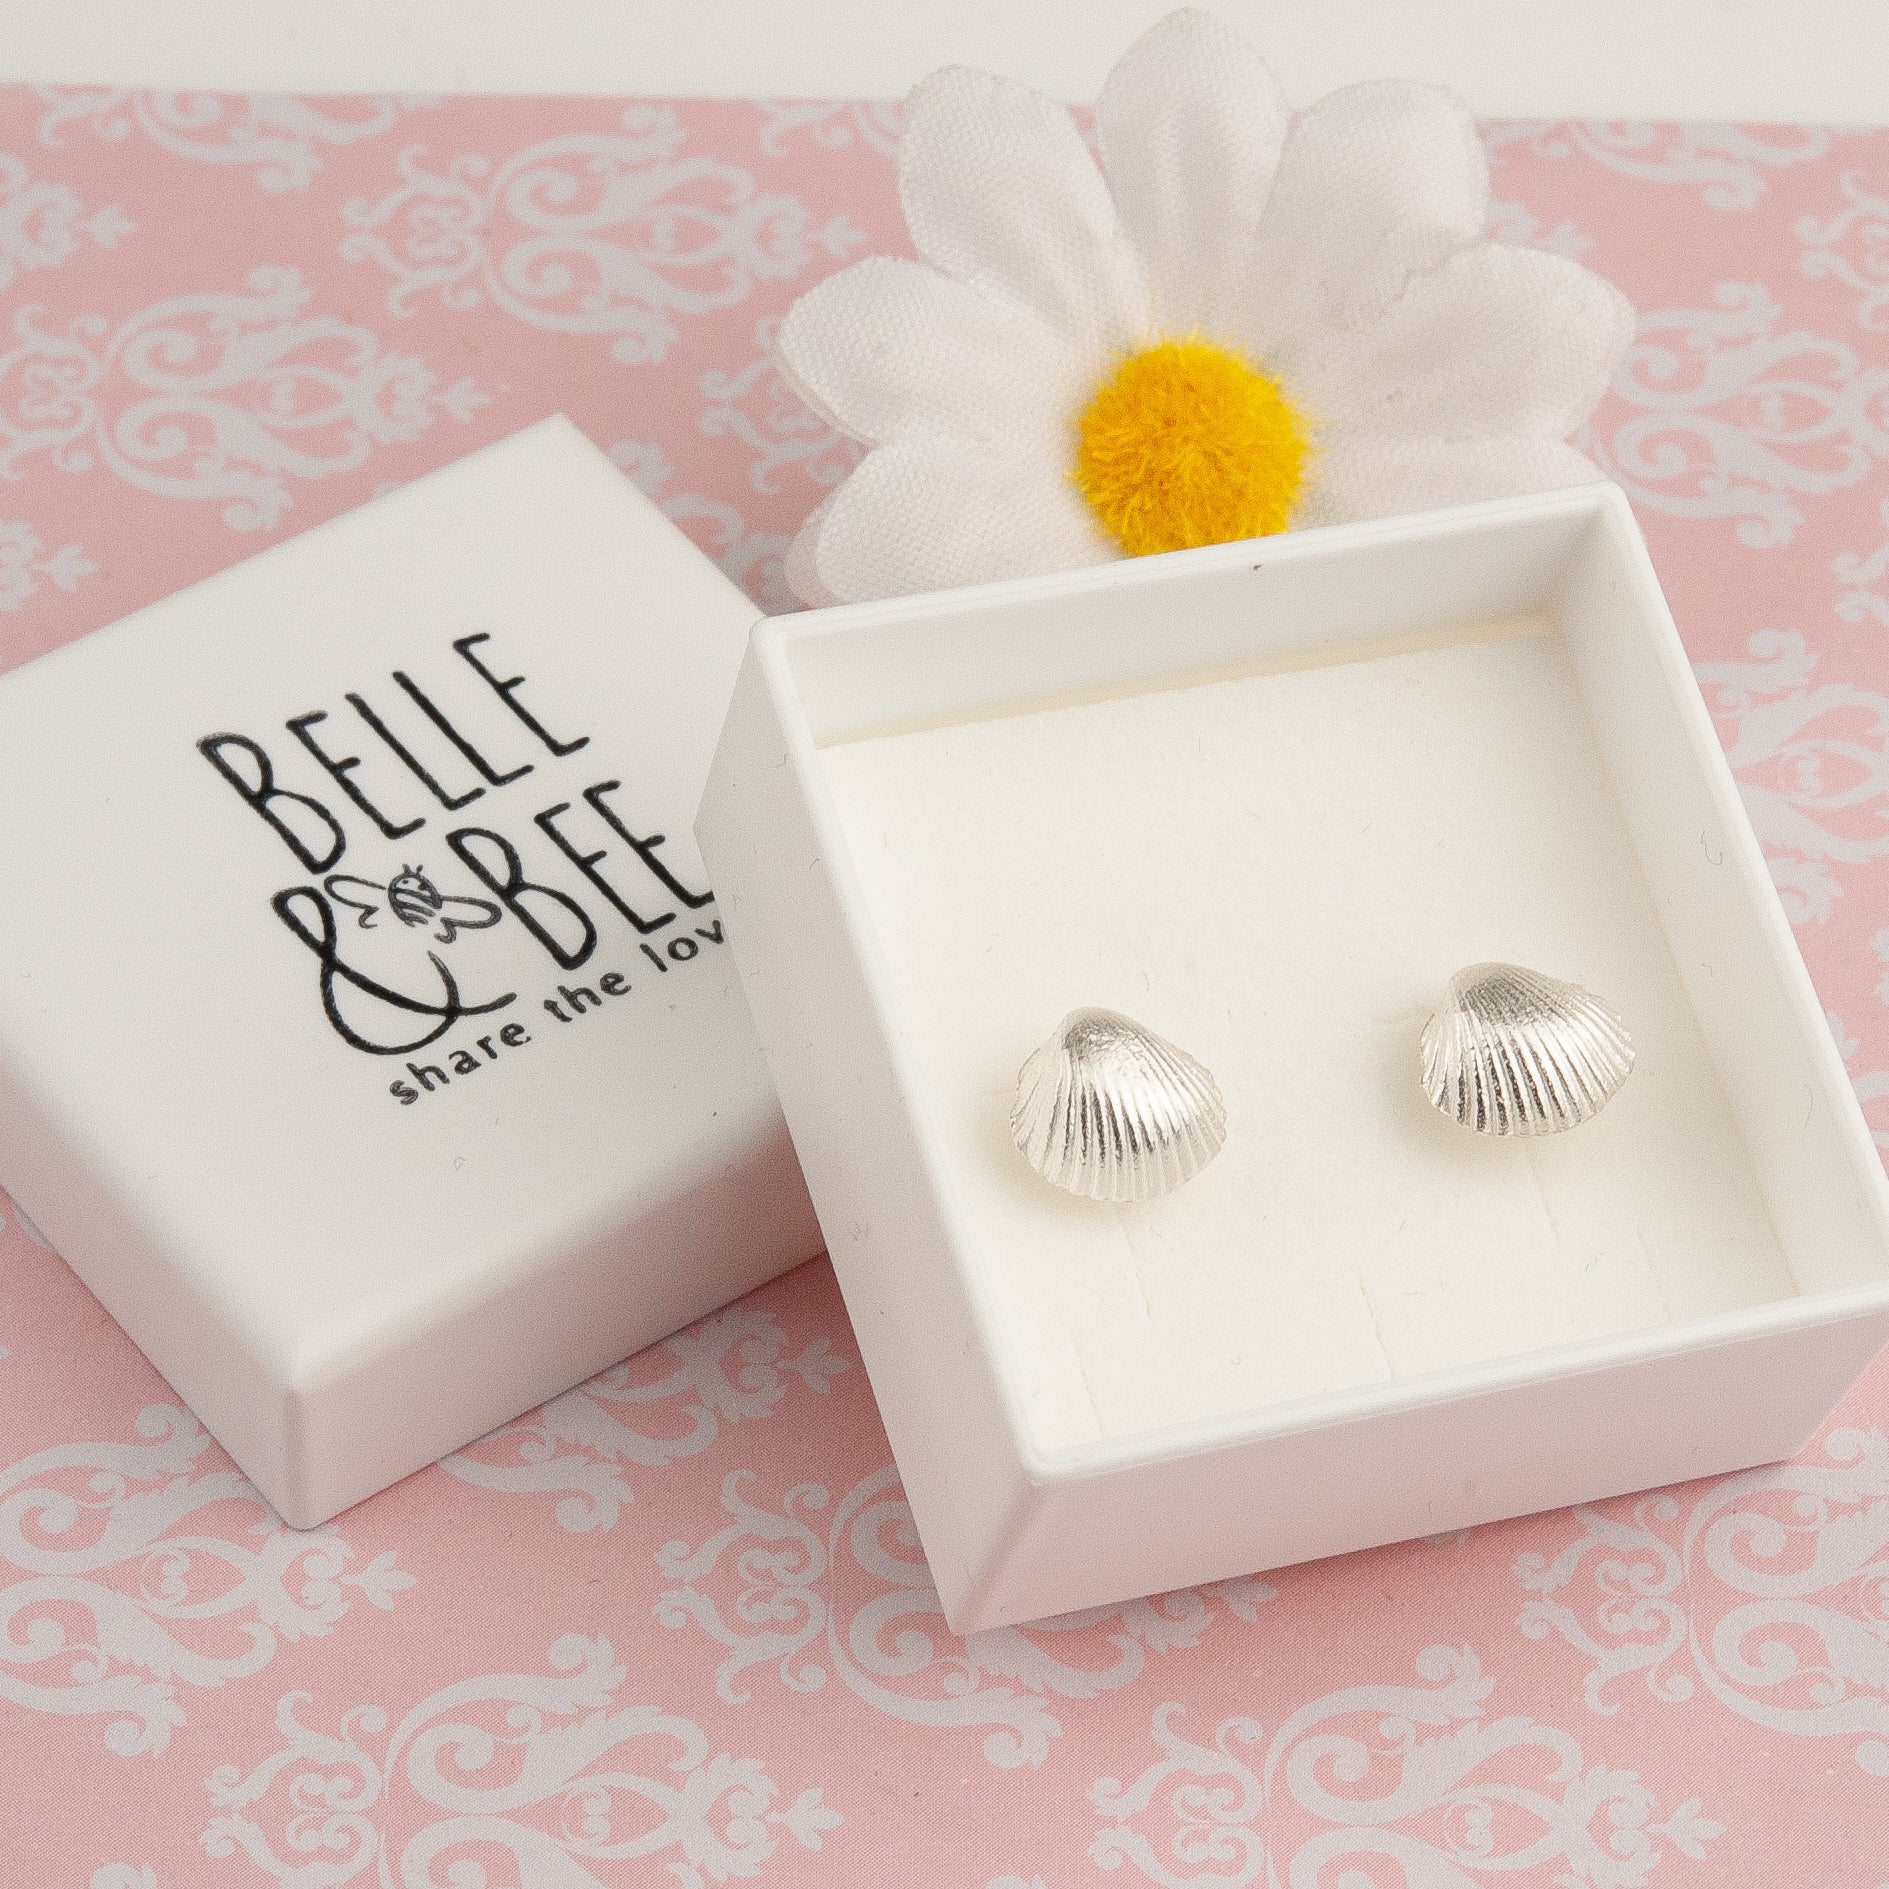 Belle & Bee silver shell earrings